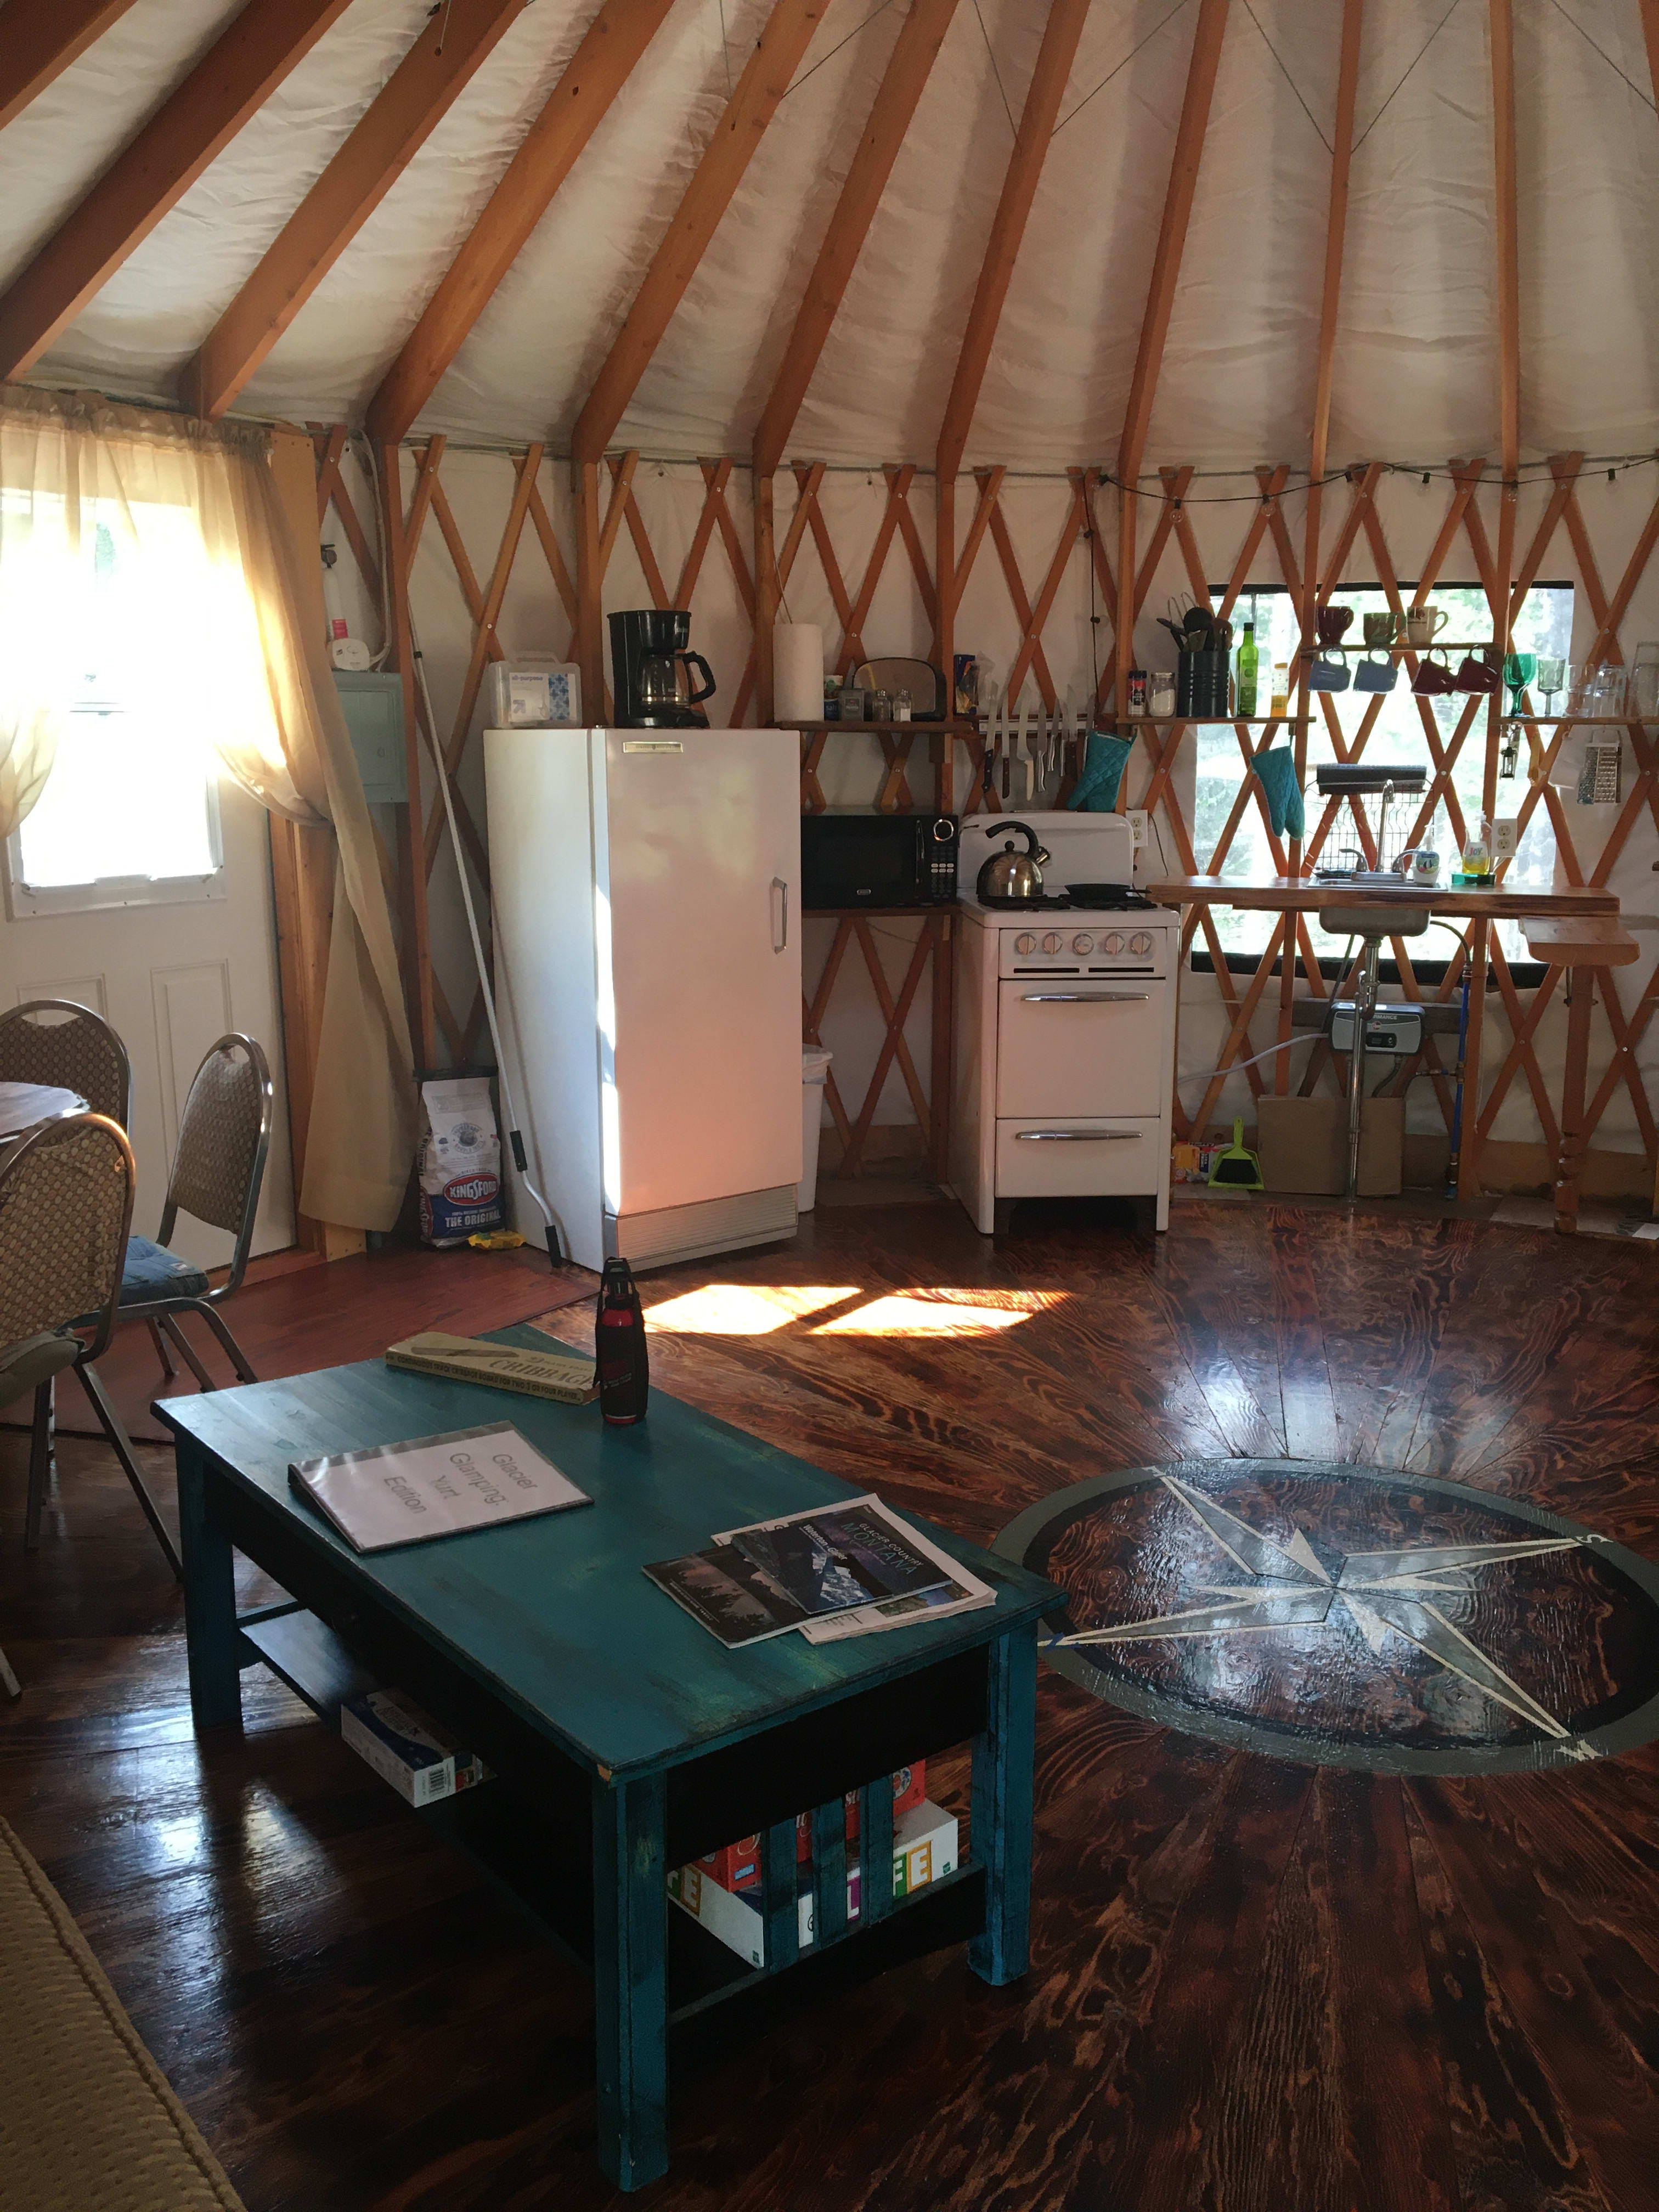 Entrance door to yurt. 